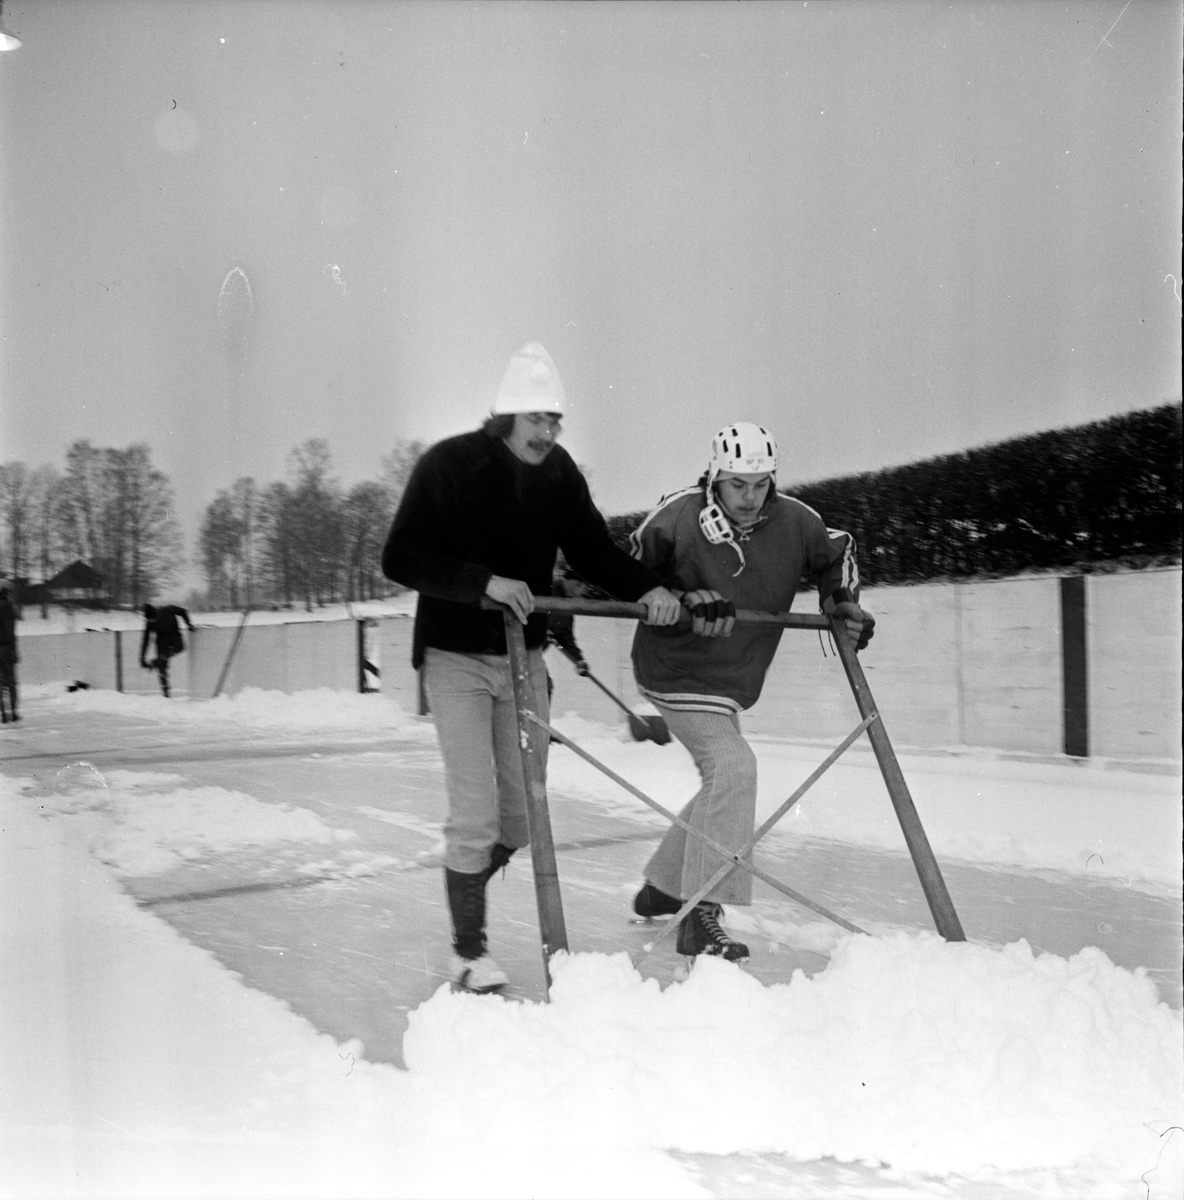 Nytorp,
"Vi gör en ishockeybana"
Febriari 1973